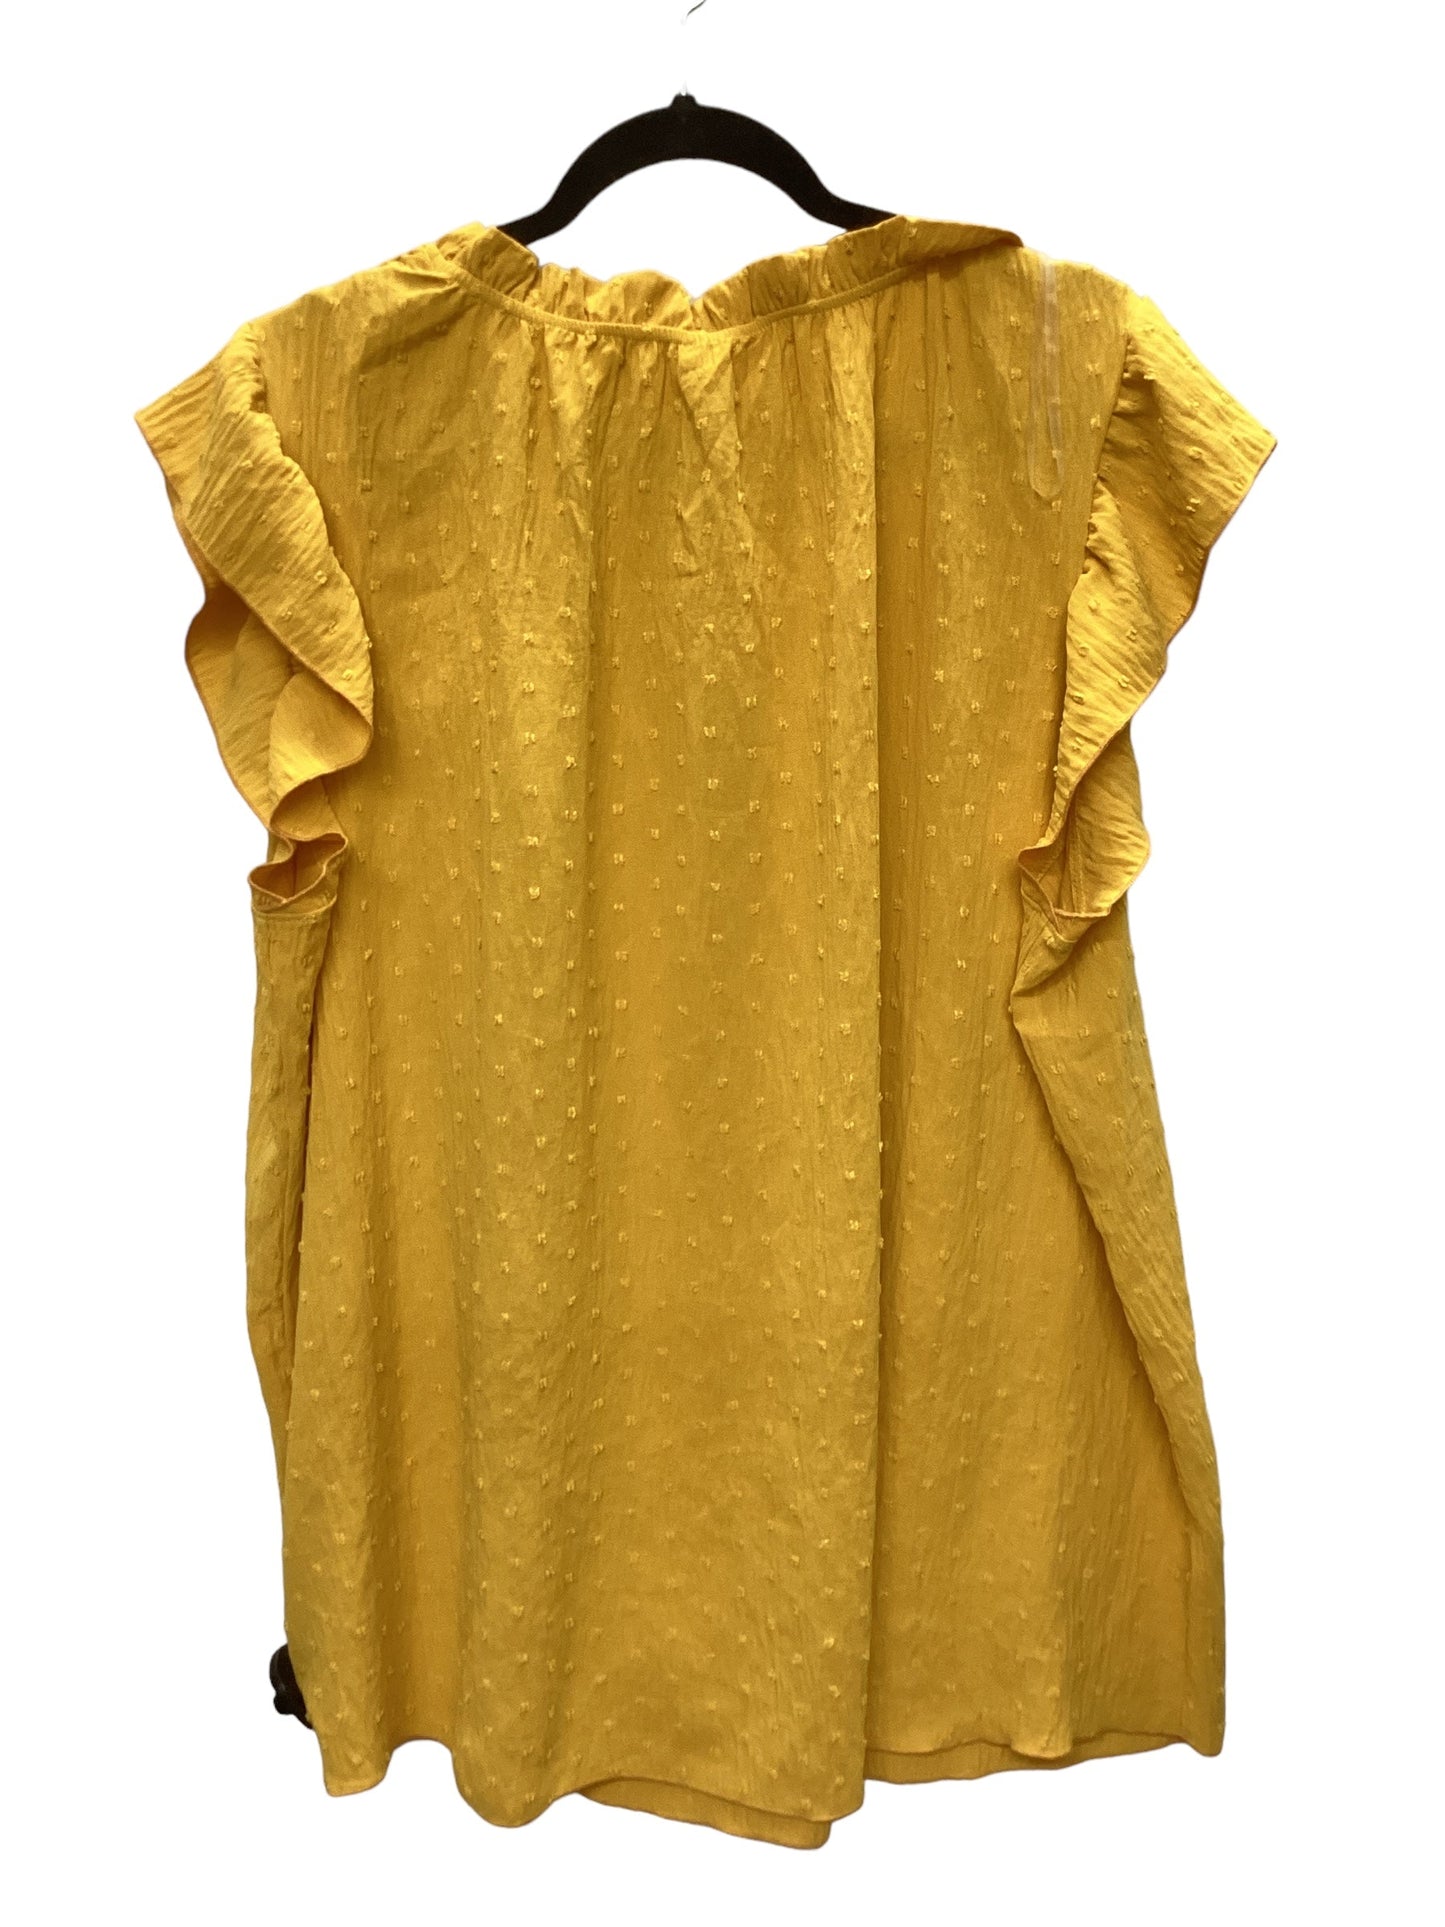 Yellow Top Sleeveless Chicsoul, Size 3x